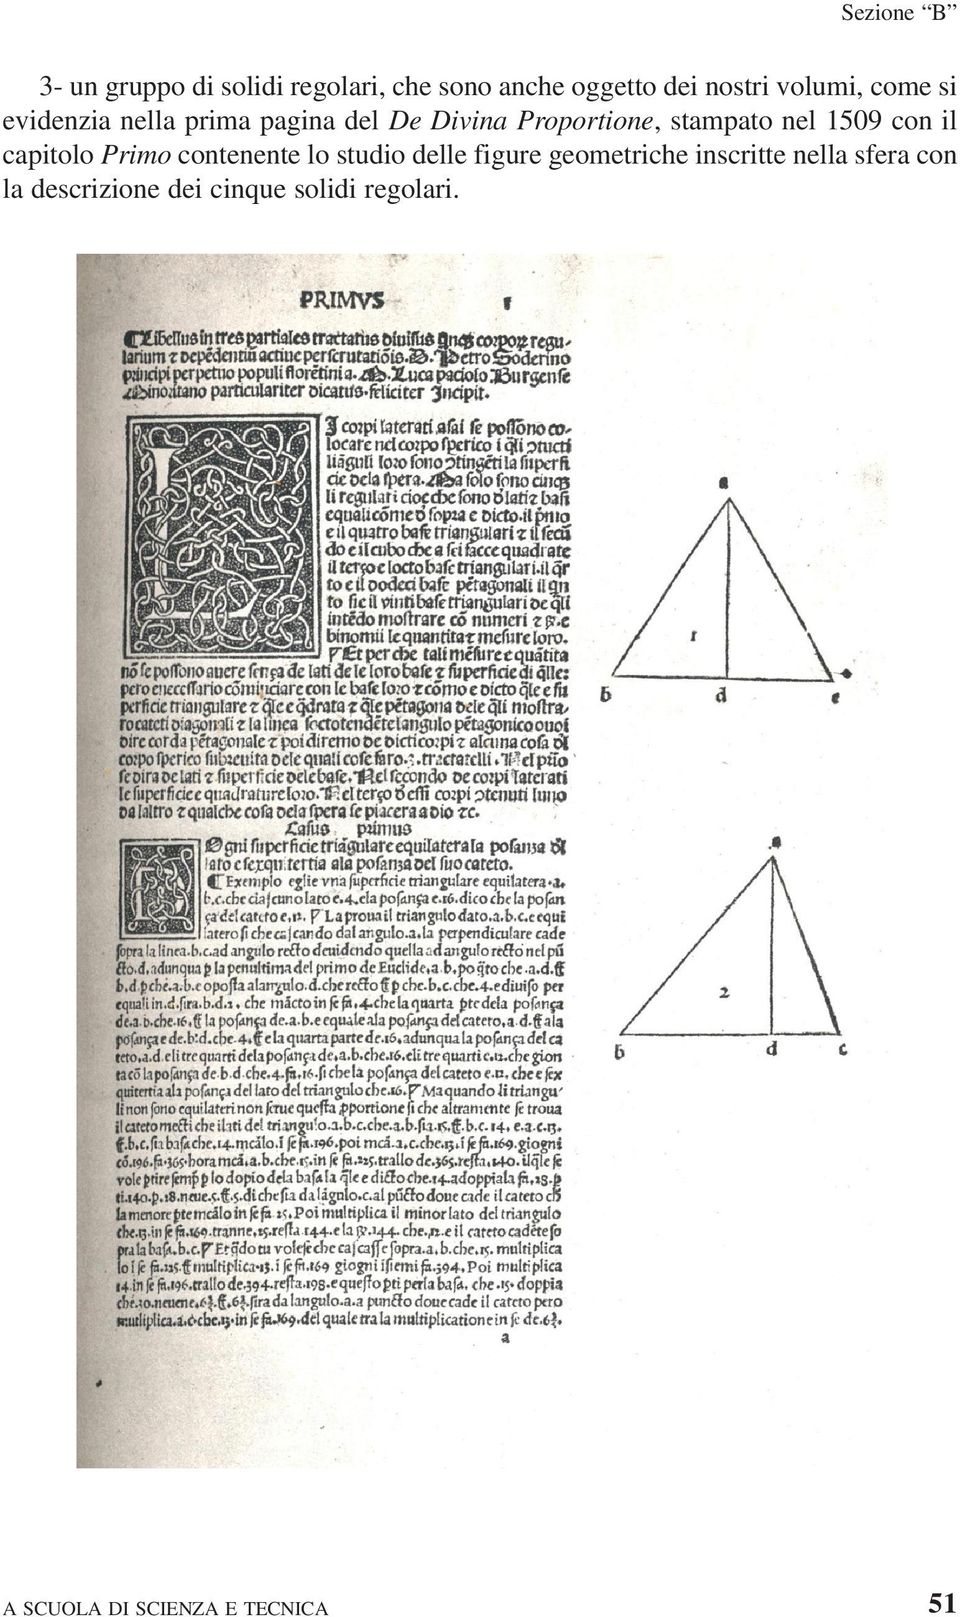 nel 1509 con il capitolo Primo contenente lo studio delle figure geometriche